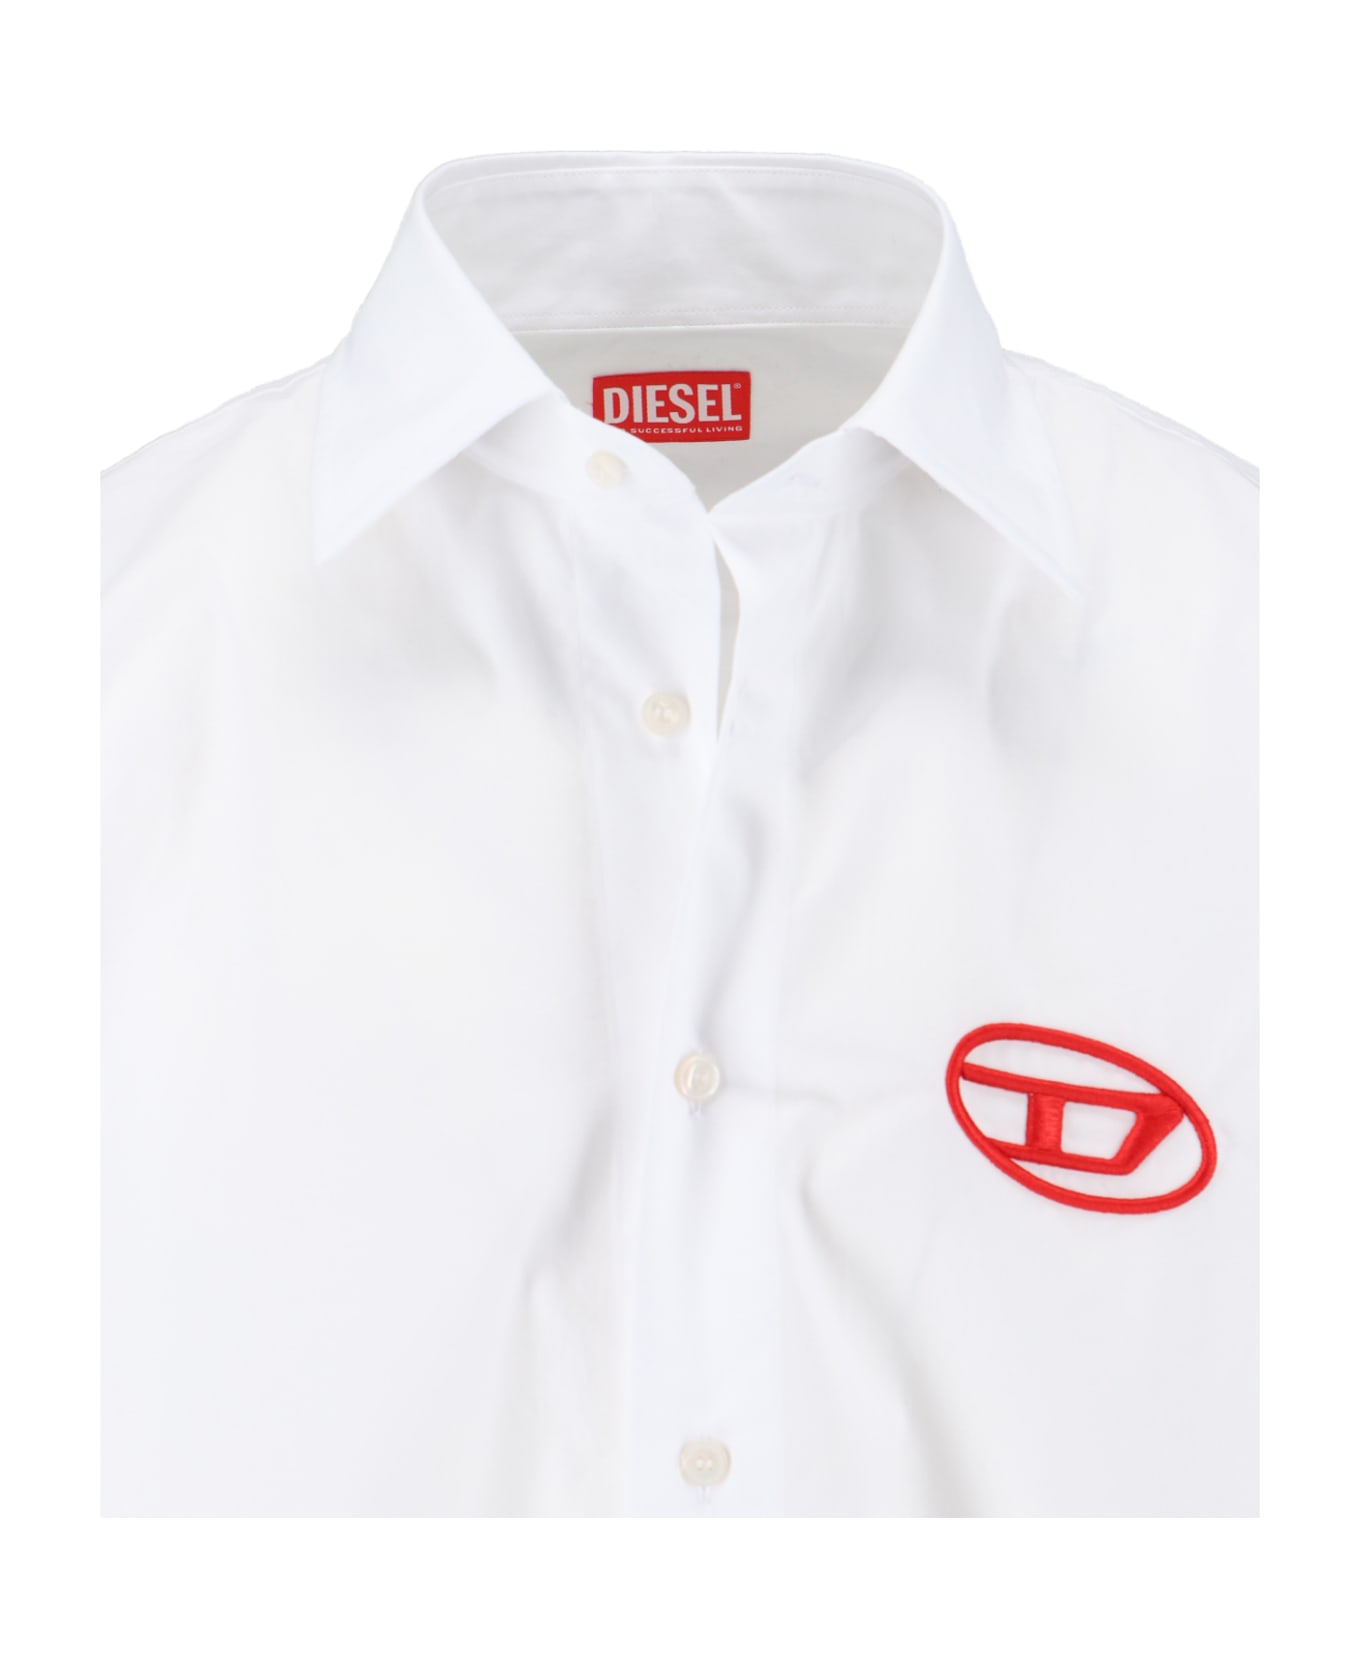 Diesel 'oval-d' Logo Shirt - White